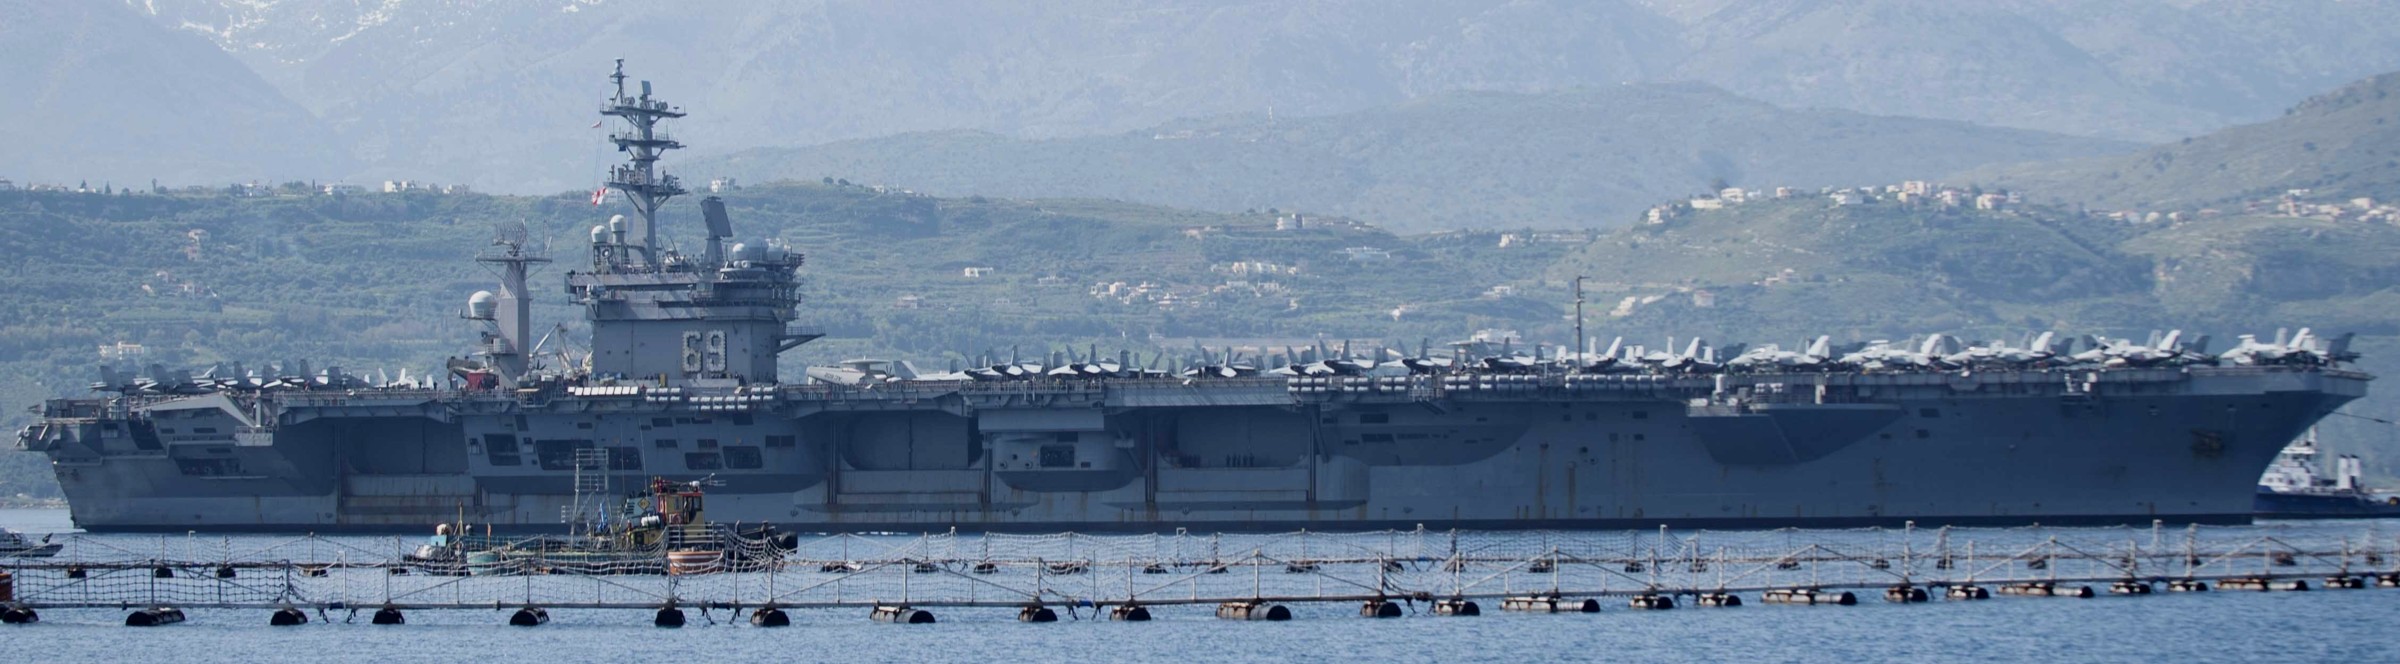 cvn-69 uss dwight d. eisenhower aircraft carrier air wing cvw-3 us navy nsa souda bay crete greece 484